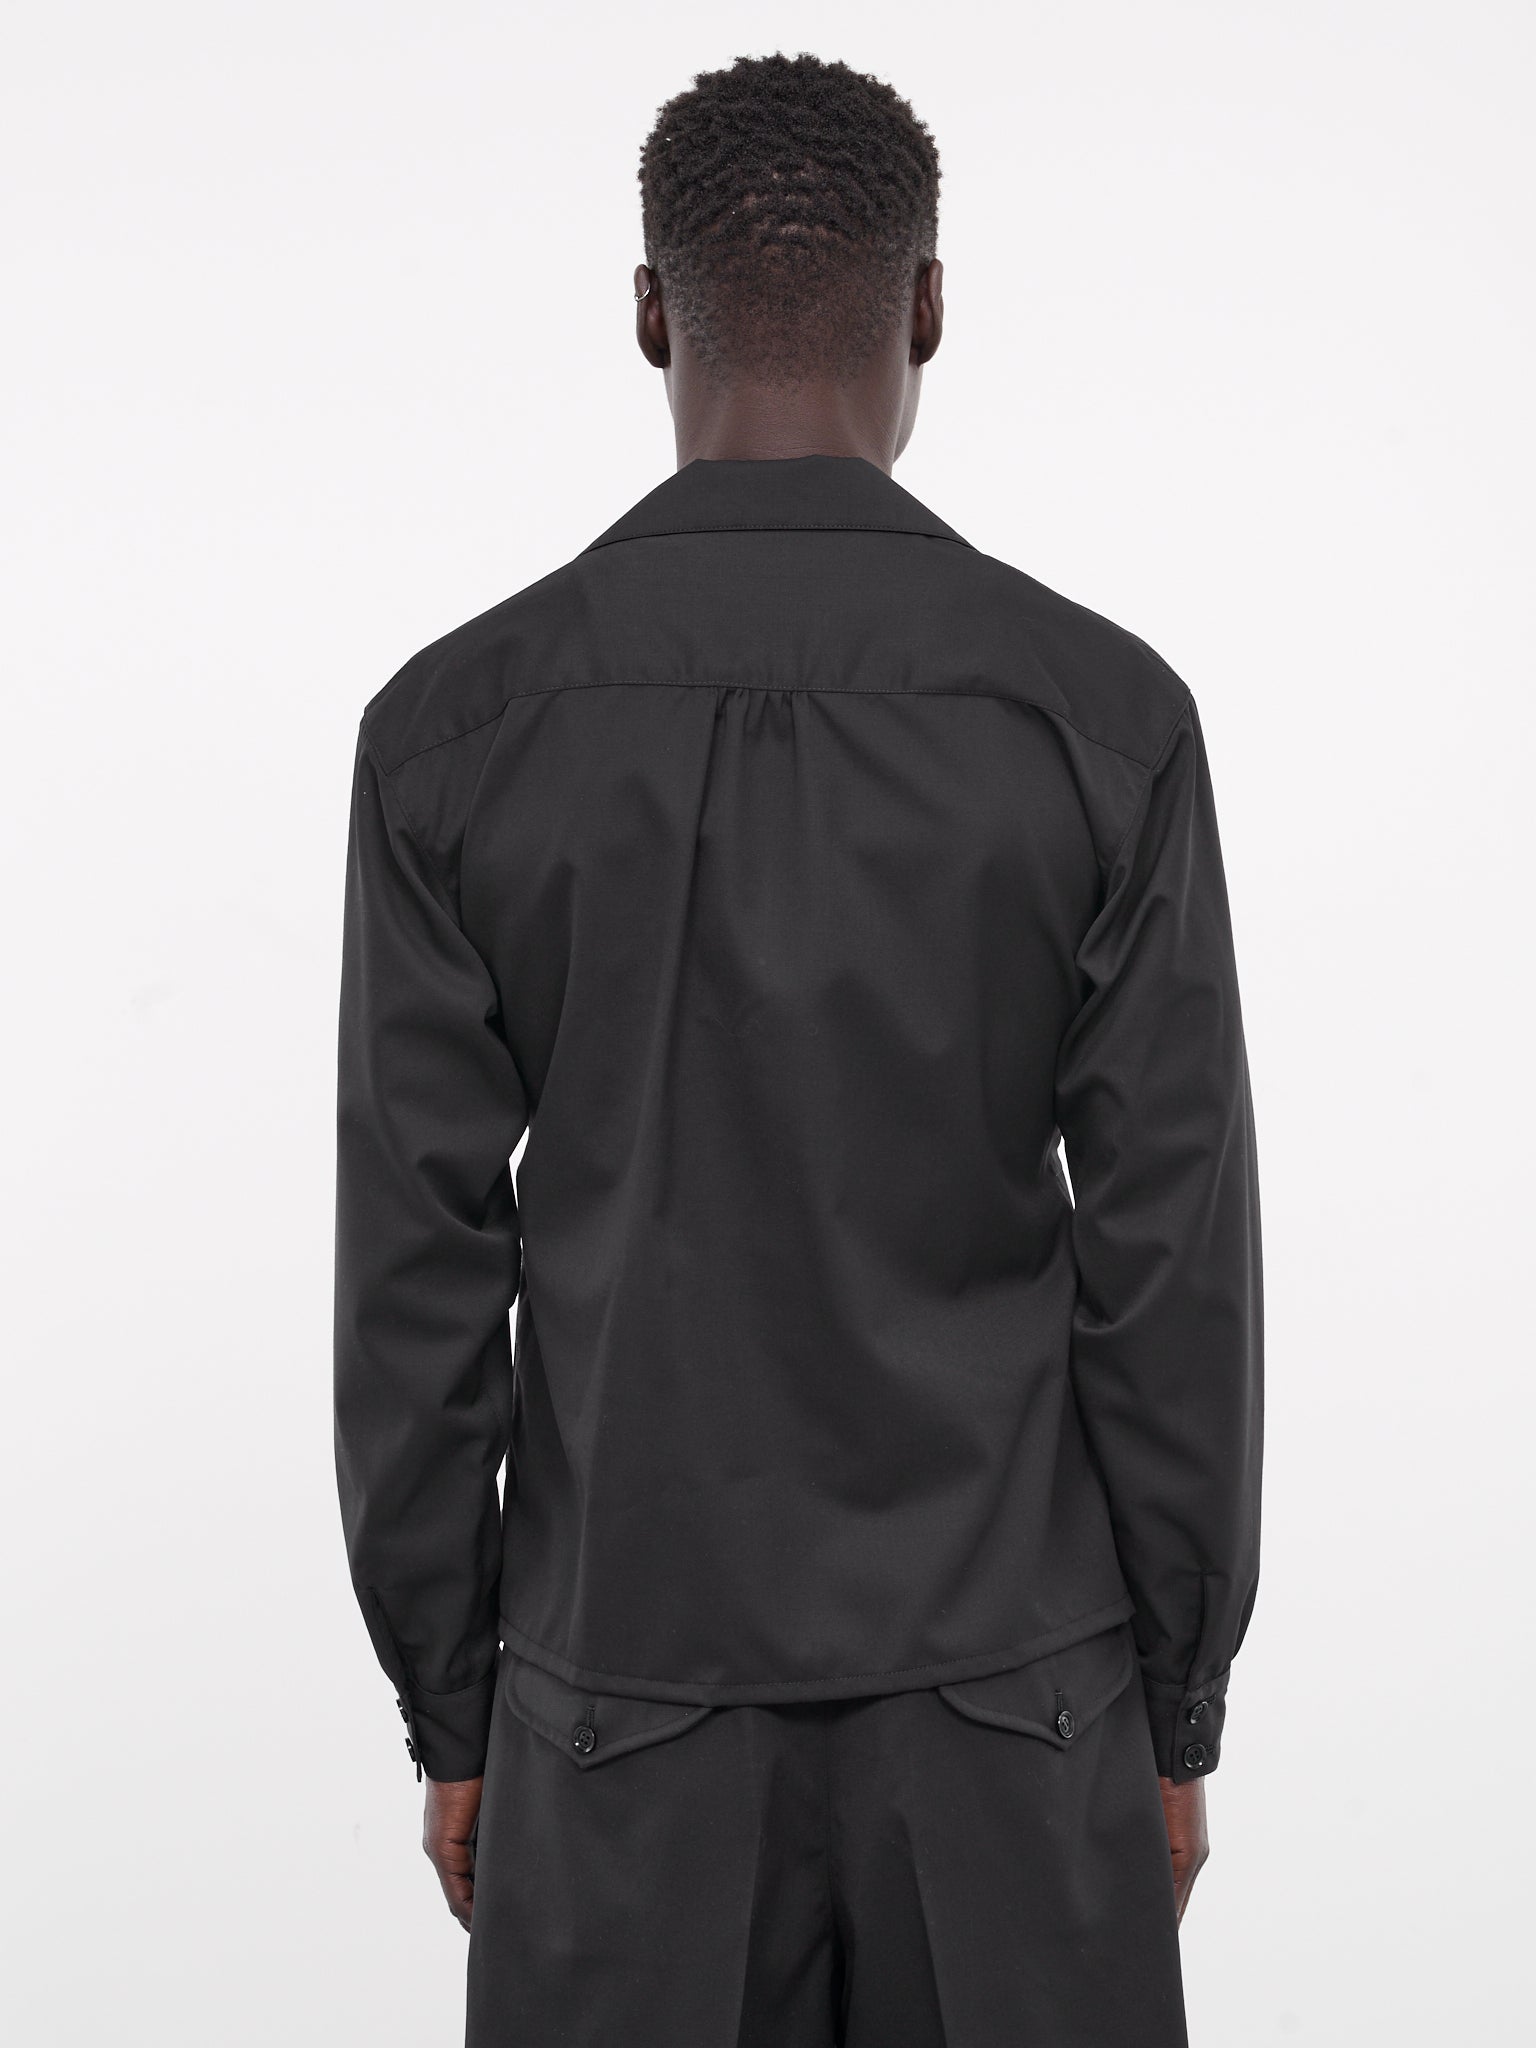 Belted Double-Breasted Jacket (EM-JK-M02-BLACK)